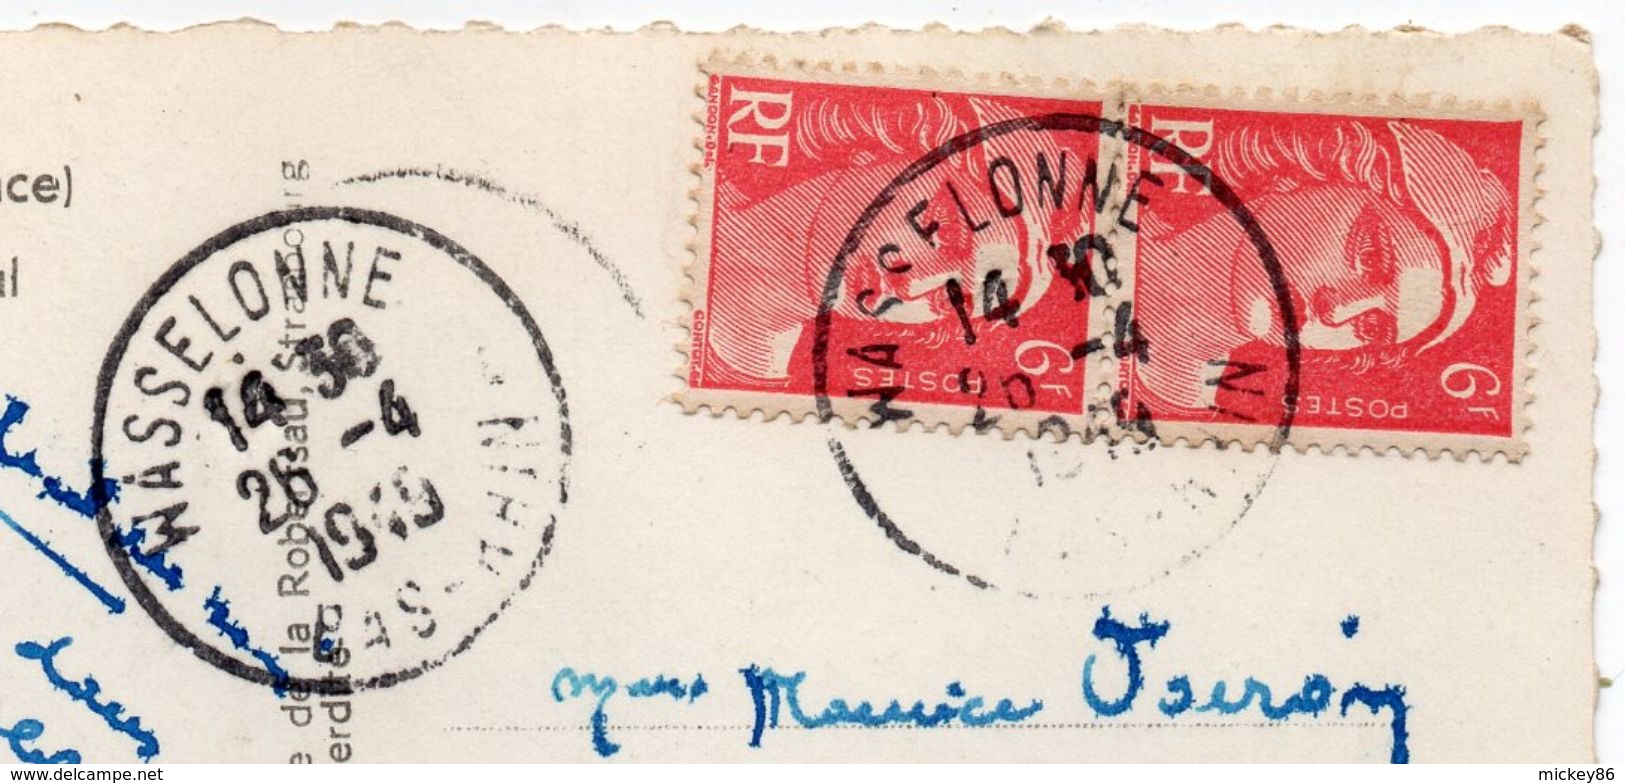 WASSELONNE--1949--Vue Sur La Vallée Du Kronthal  --  Cachet --timbre  ..... à Saisir - Wasselonne